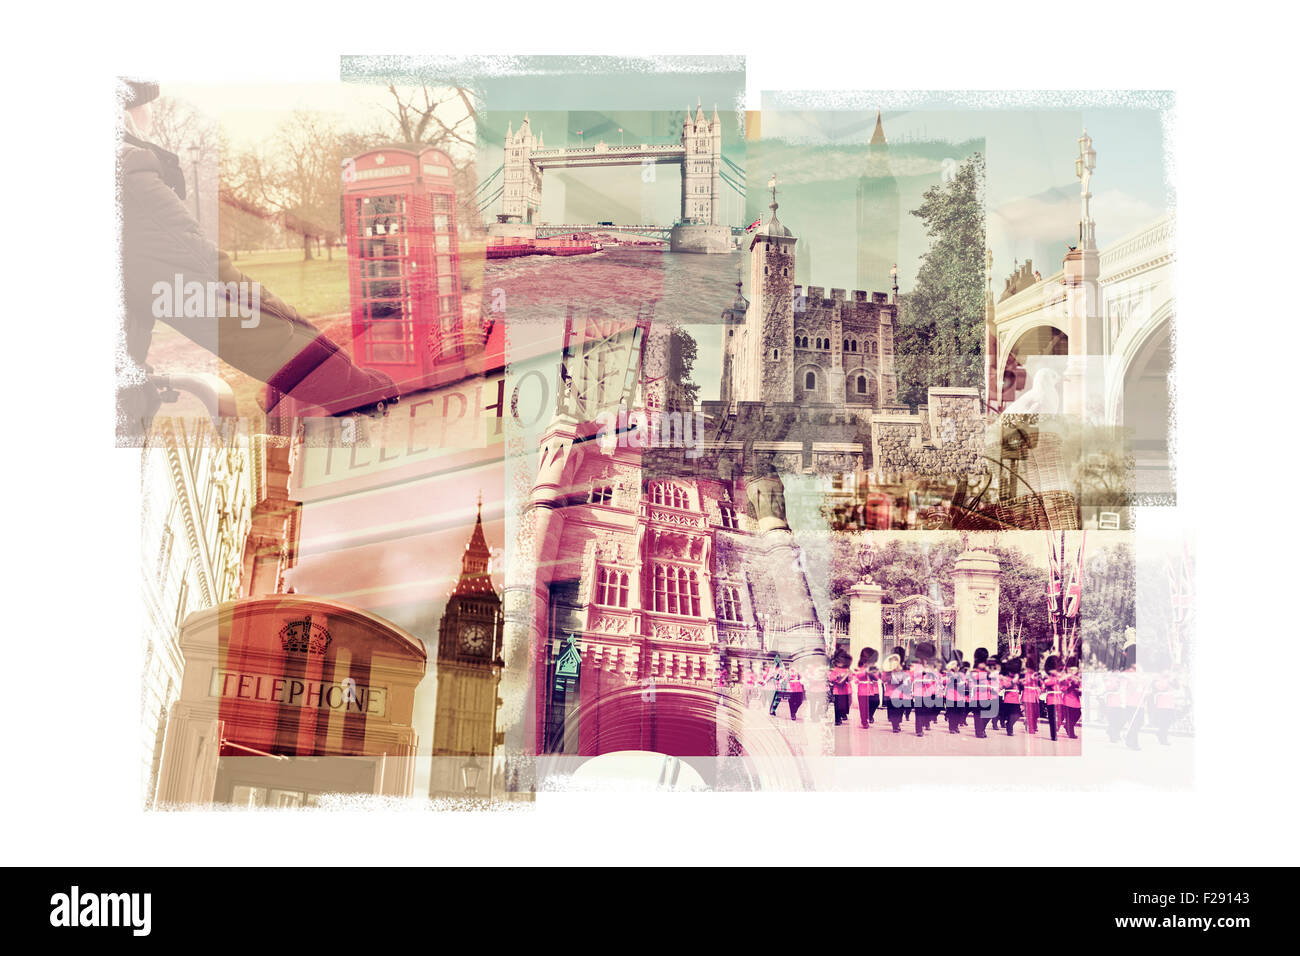 Mehrfachbelichtungen von verschiedenen Sehenswürdigkeiten in London, Vereinigtes Königreich, wie den Big Ben, die Tower Bridge, der Tower of London Stockfoto